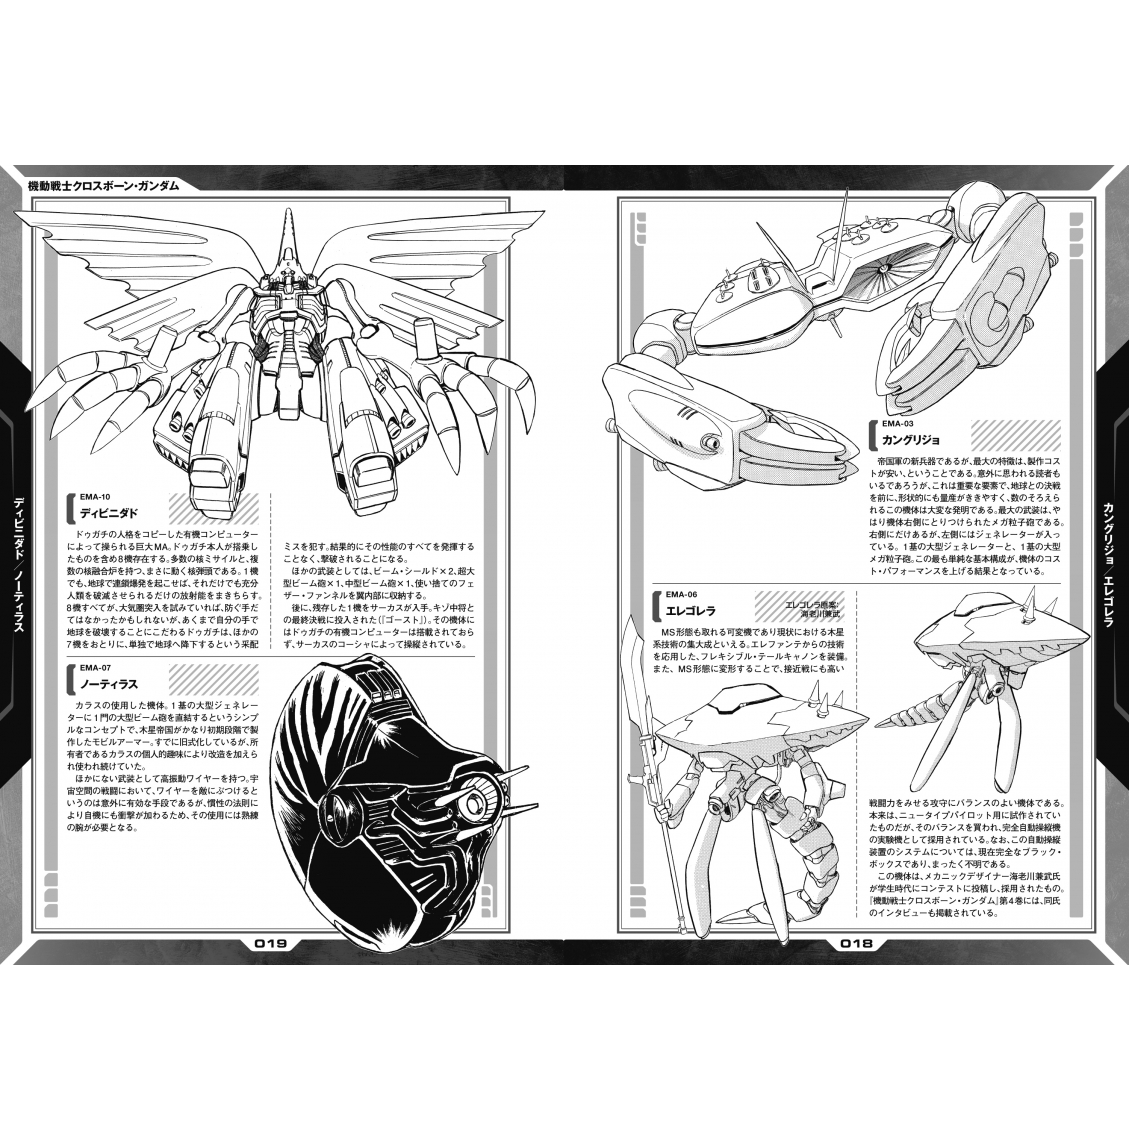 機動戦士クロスボーン・ガンダム Dust 4 設定集付き特装版 カドカワコミックスaエース